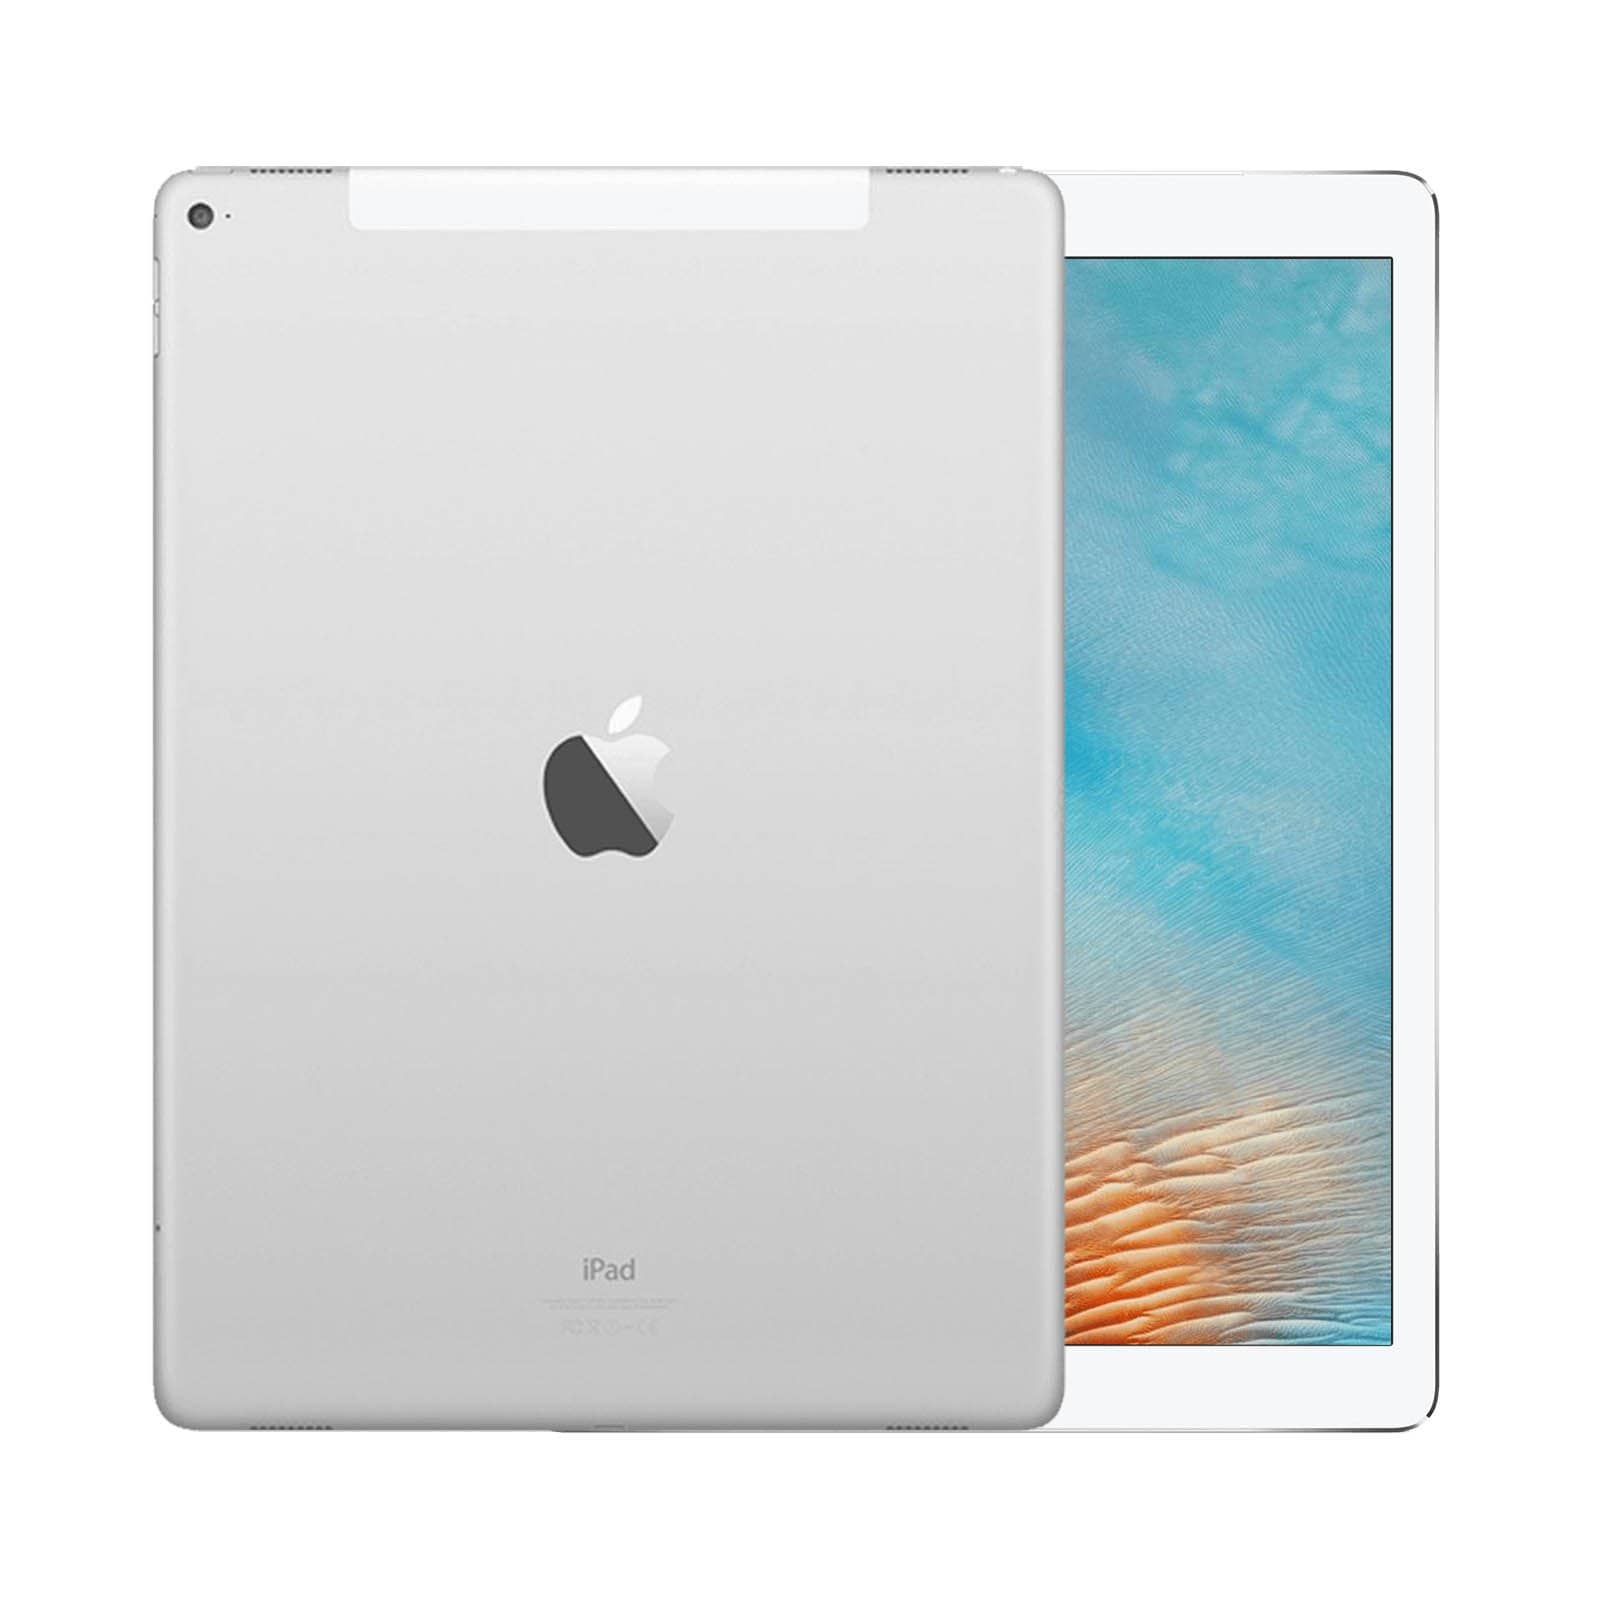 iPad Pro 12.9 Inch 2nd Gen 64GB Silver Pristine - WiFi 64GB Silver Pristine